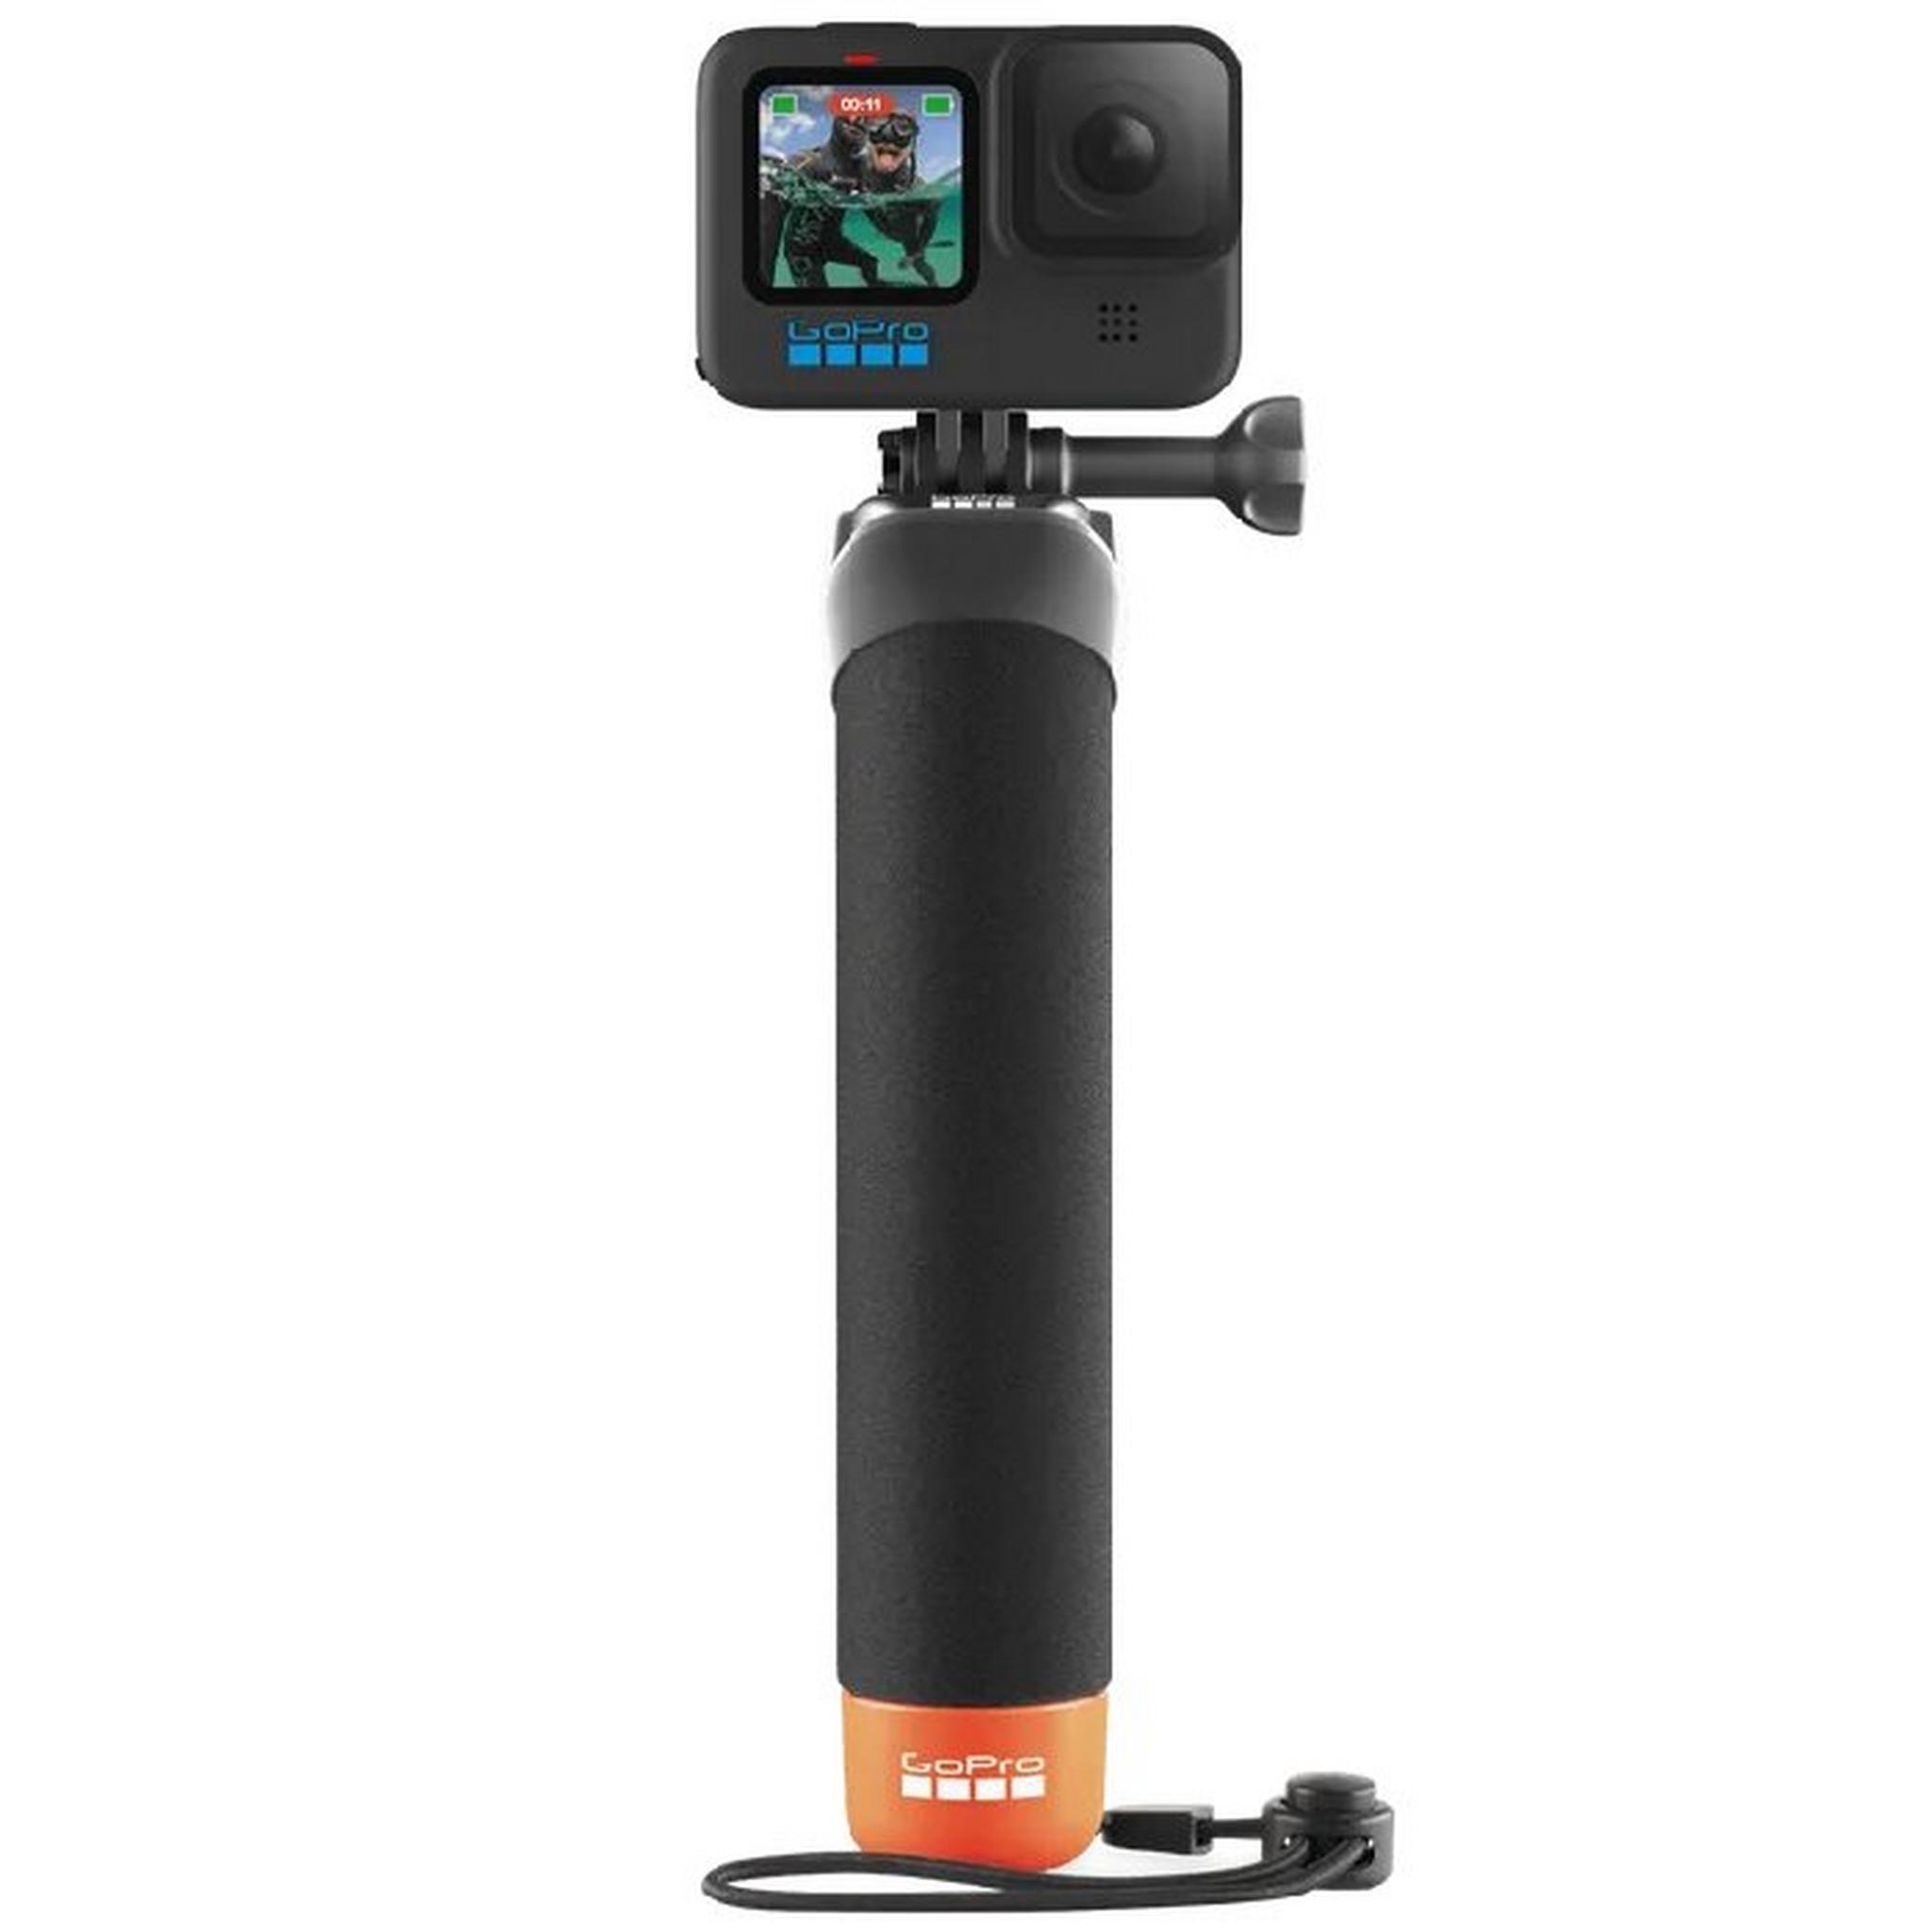 GoPro Camera Handler, AFHGM-003 – Black